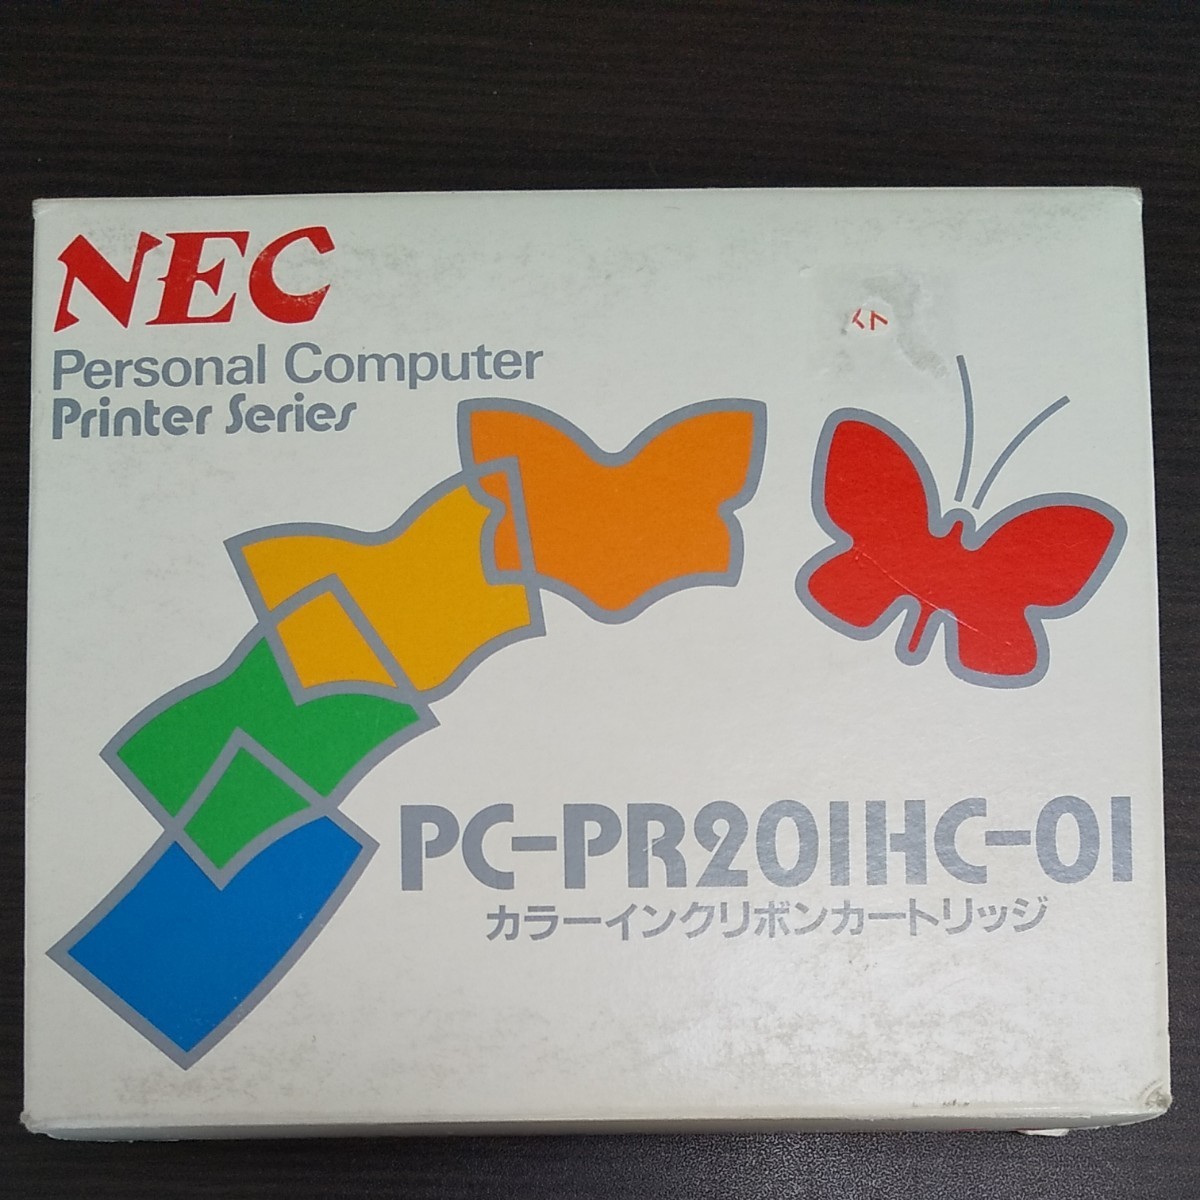 純正インクリボン NEC PC-PR201HC-01 ６箱